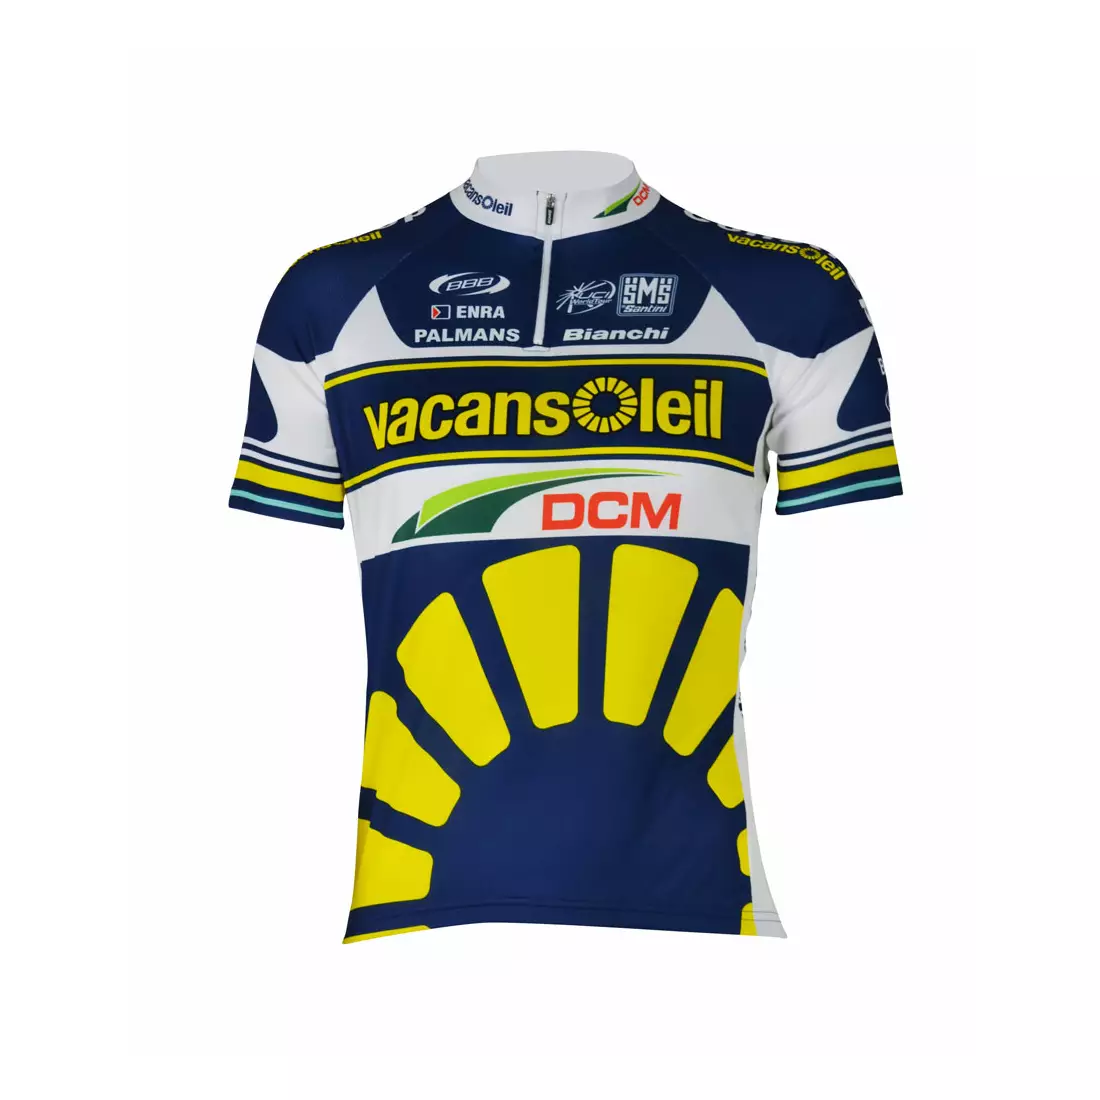 SANTINI - tým VACANSOLEIL 2013 - pánský cyklistický dres